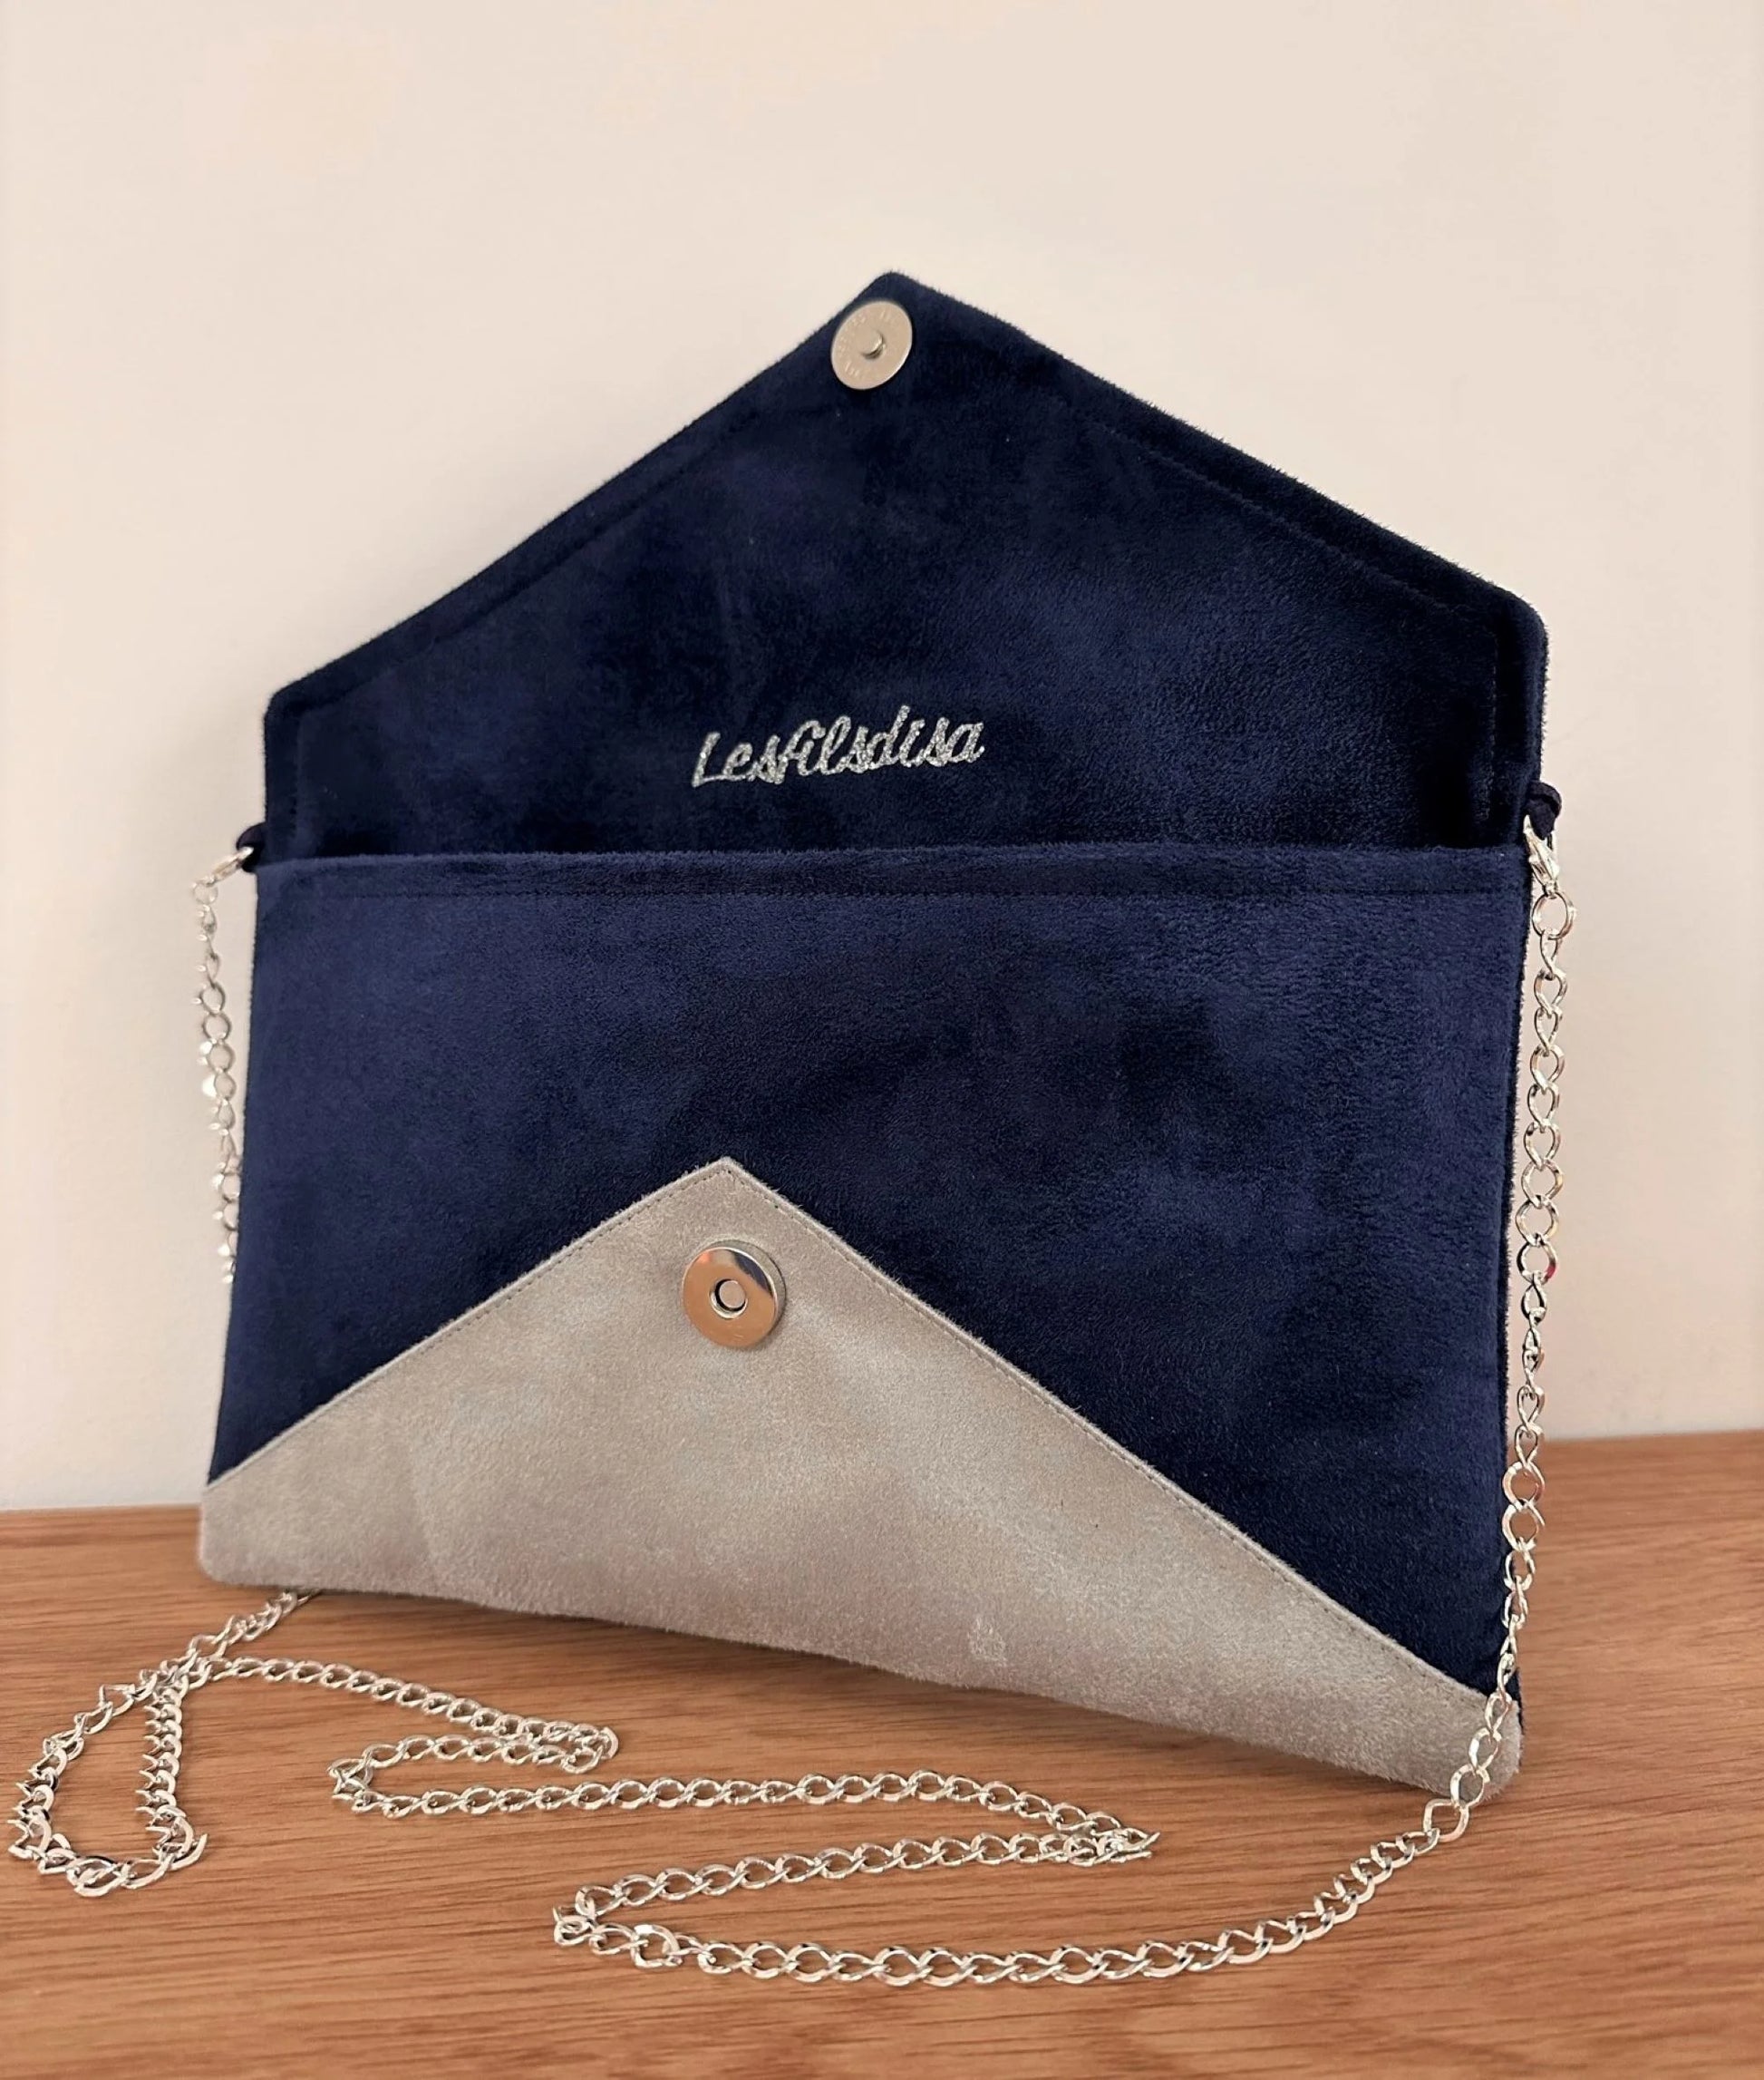 Le sac pochette Isa bleu marine et gris à paillettes argentées, avec sa chainette amovible, ouvert.